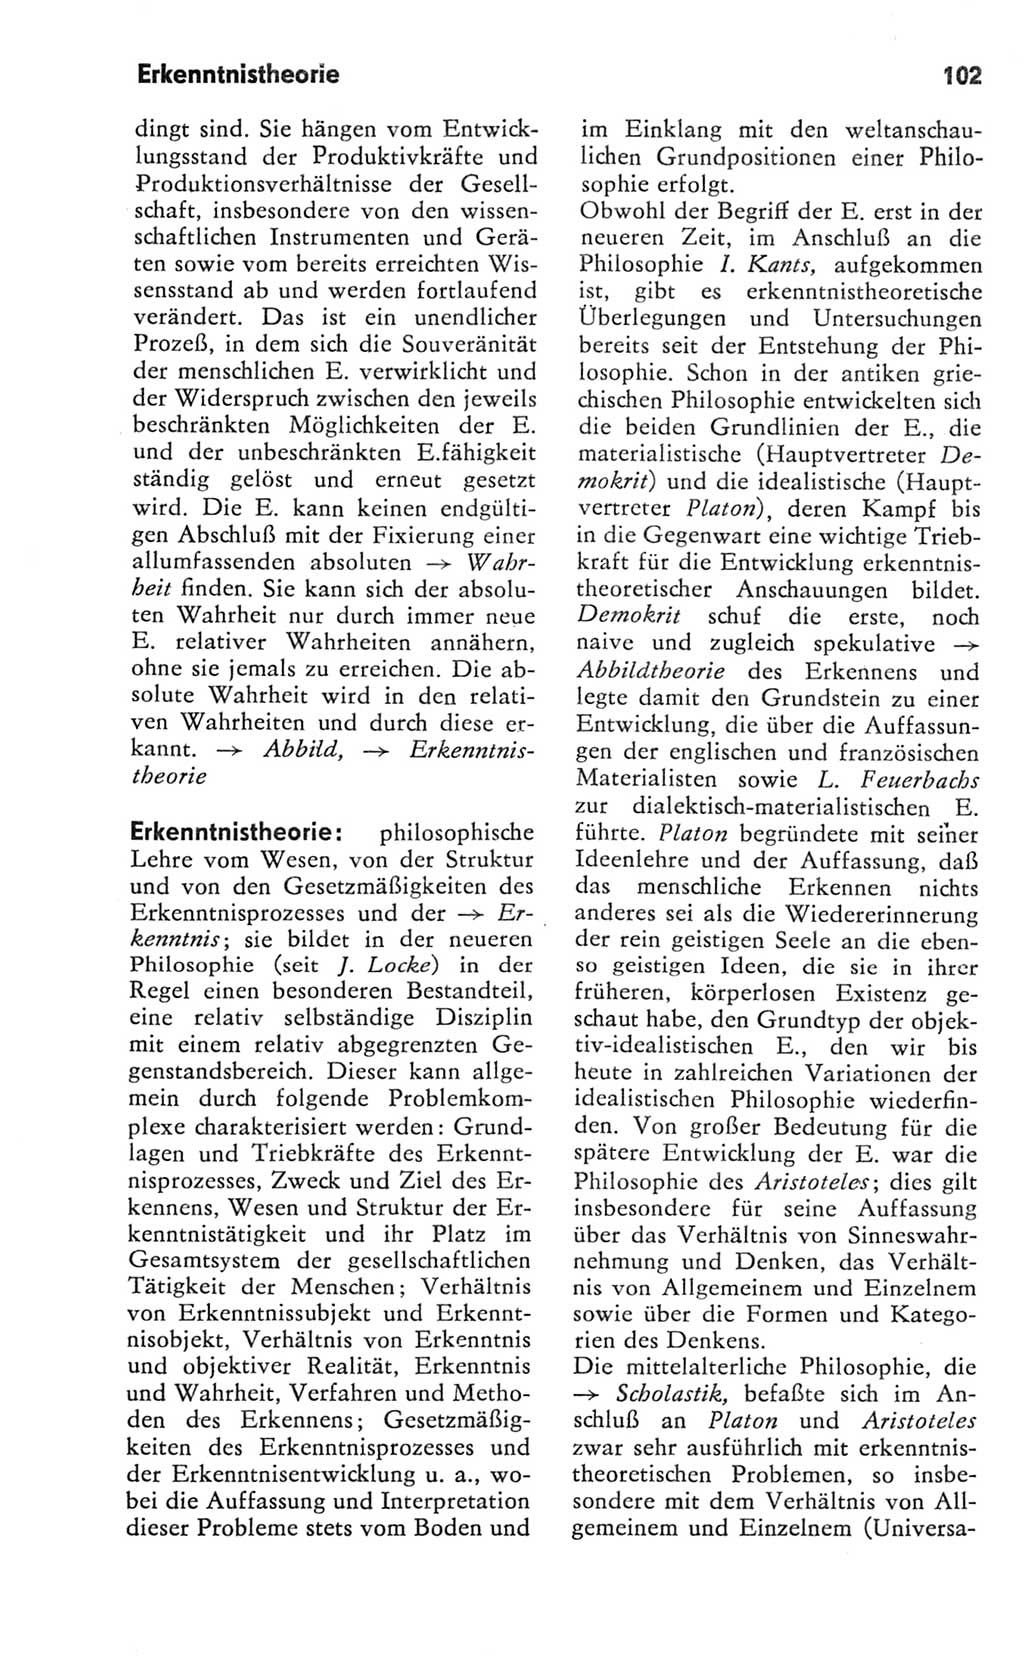 Kleines Wörterbuch der marxistisch-leninistischen Philosophie [Deutsche Demokratische Republik (DDR)] 1981, Seite 102 (Kl. Wb. ML Phil. DDR 1981, S. 102)